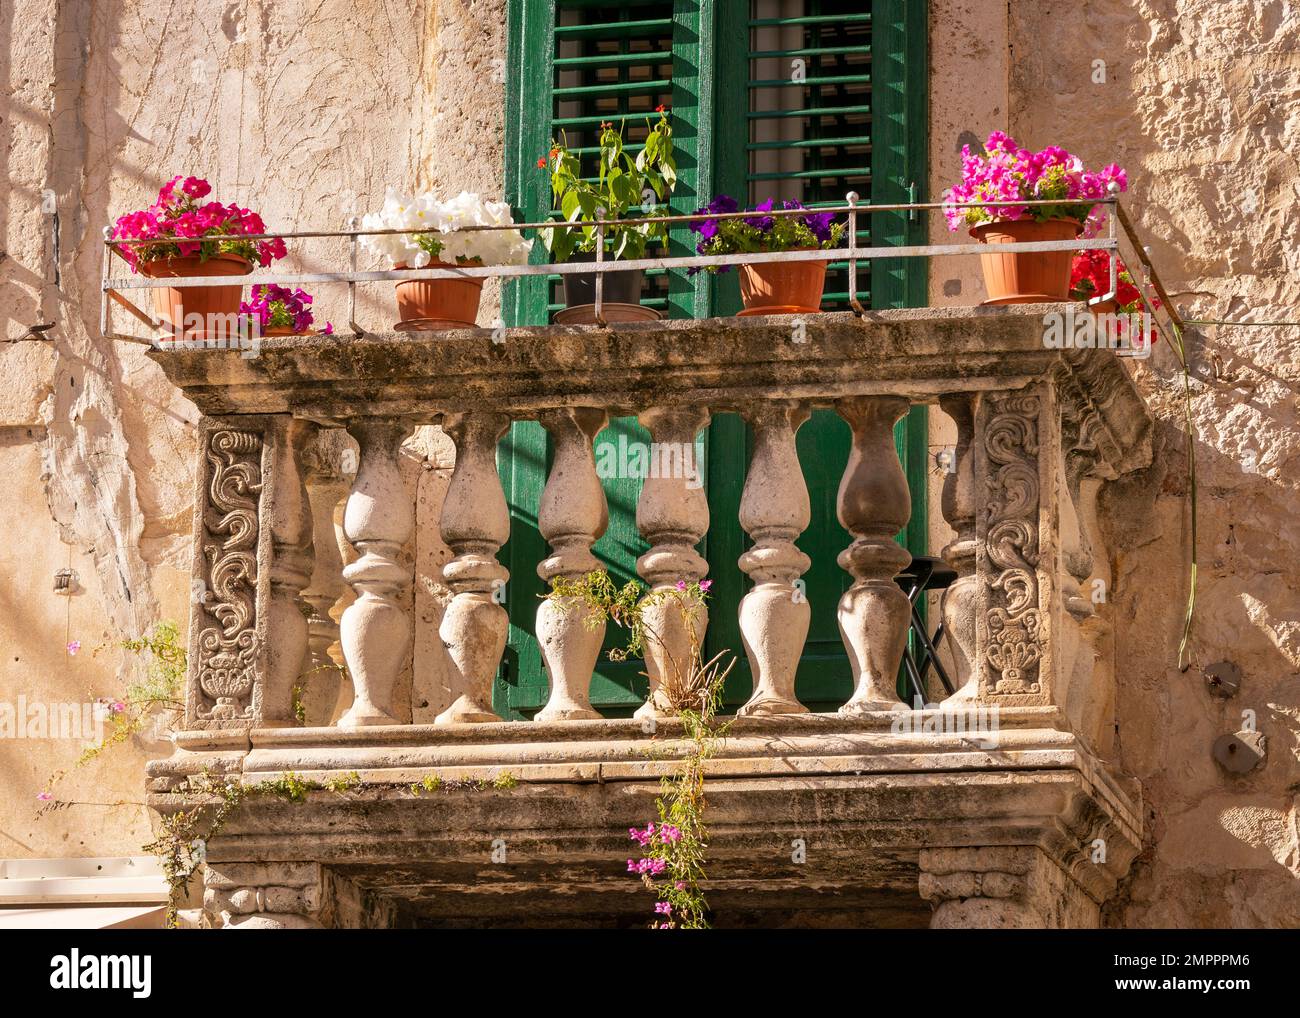 SPLIT, KROATIEN, EUROPA - Blumen auf dem Balkon des Gebäudes in der Altstadt von Split. Stockfoto